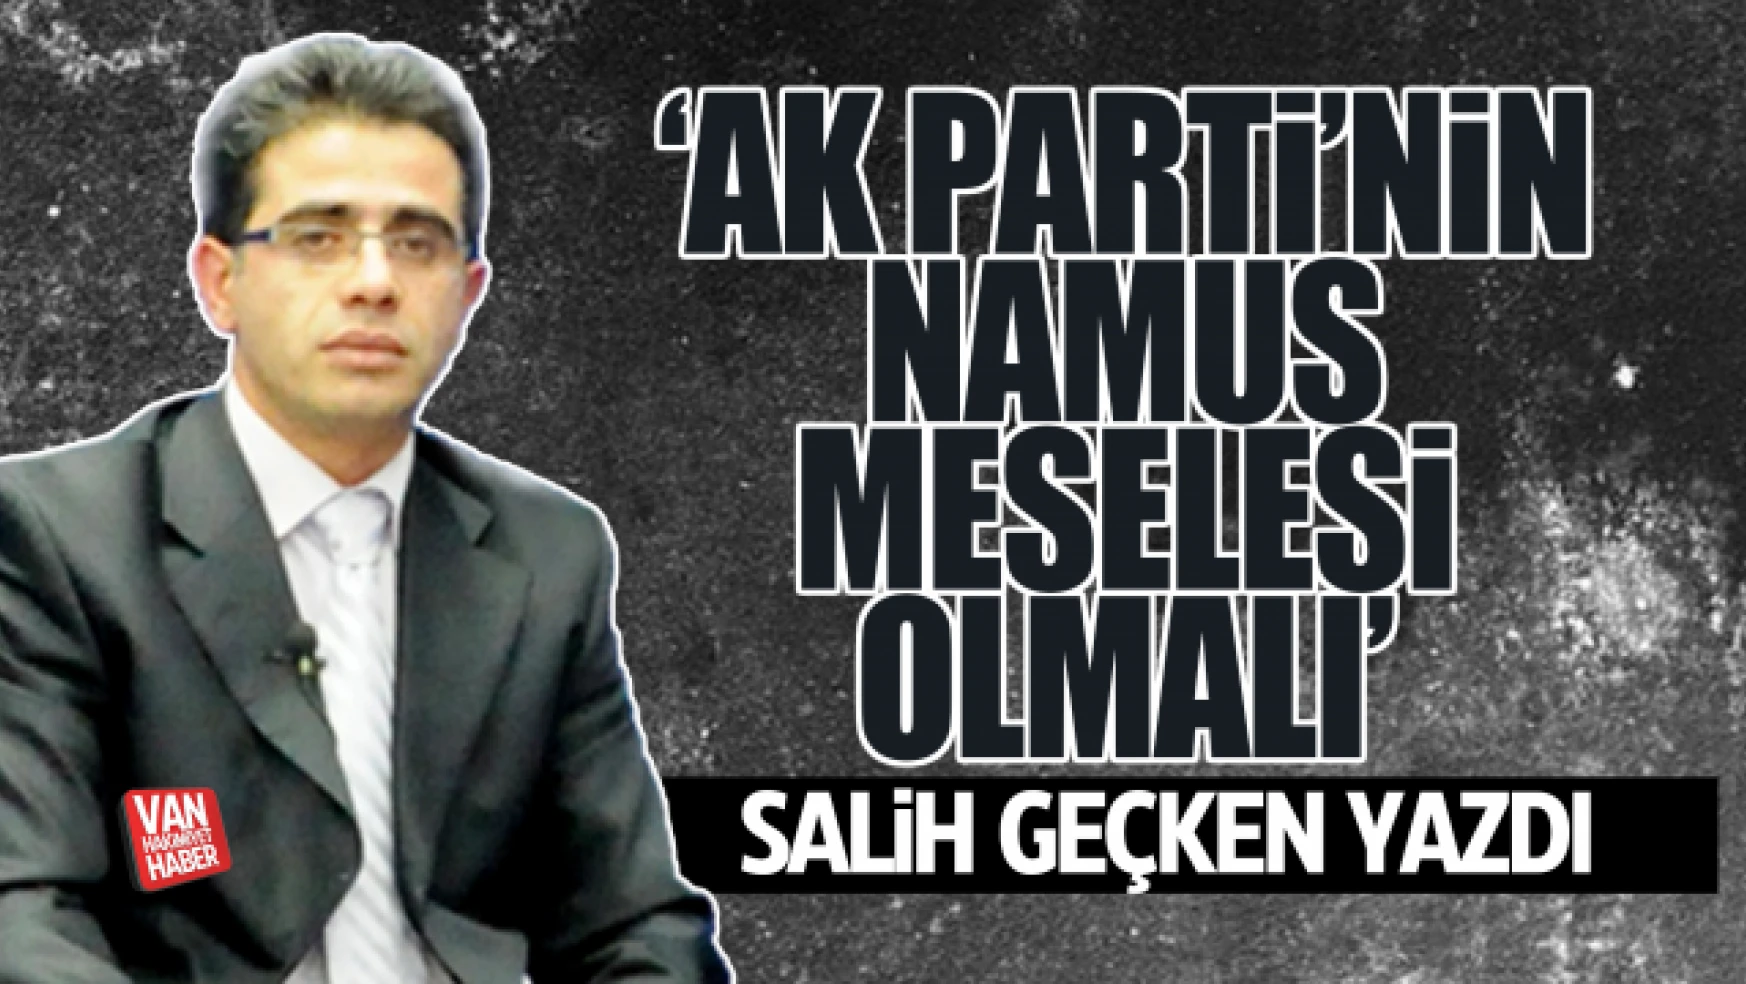 Gazeteci-Yazar Geçken'den 'AK Parti'nin namus meselesi olmalı' yazısı